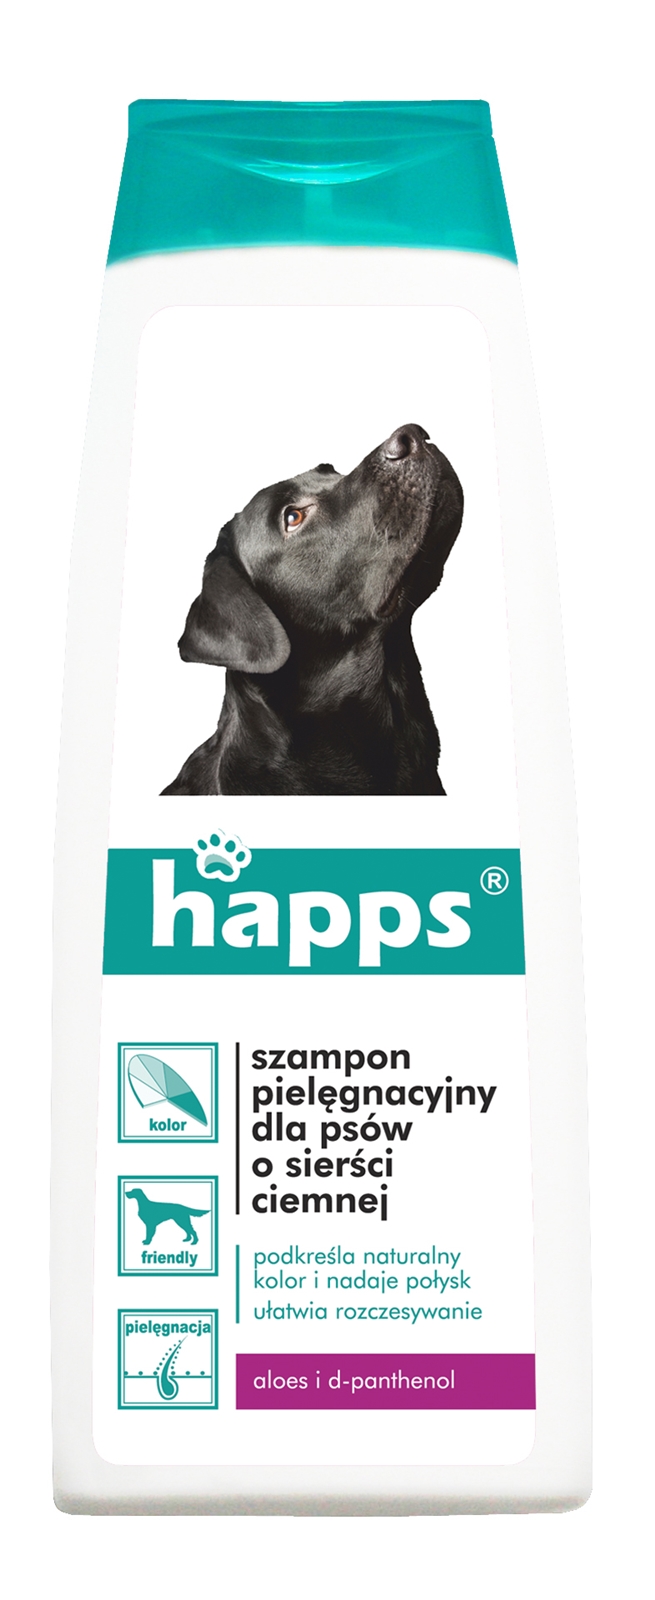 Happs, szampon pielęgnacyjny dla psów sierści ciemnej, płyn 200ml